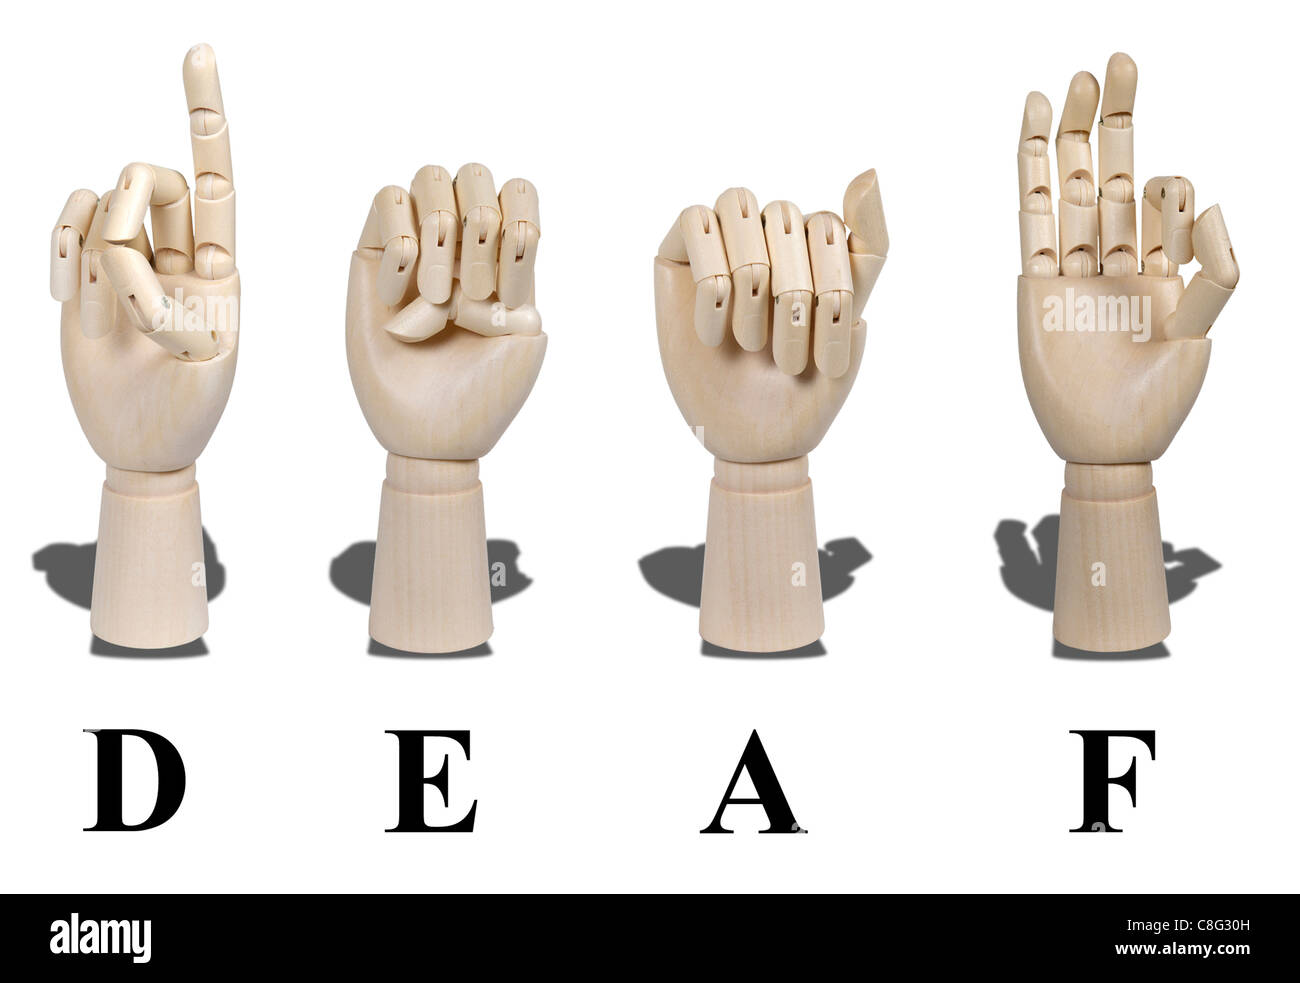 Gehörlose in amerikanischer Gebärdensprache, die mit sichtbaren Gesten zur Kommunikation der Gehörlosen ausgedrückt wird ausgeschrieben Stockfoto